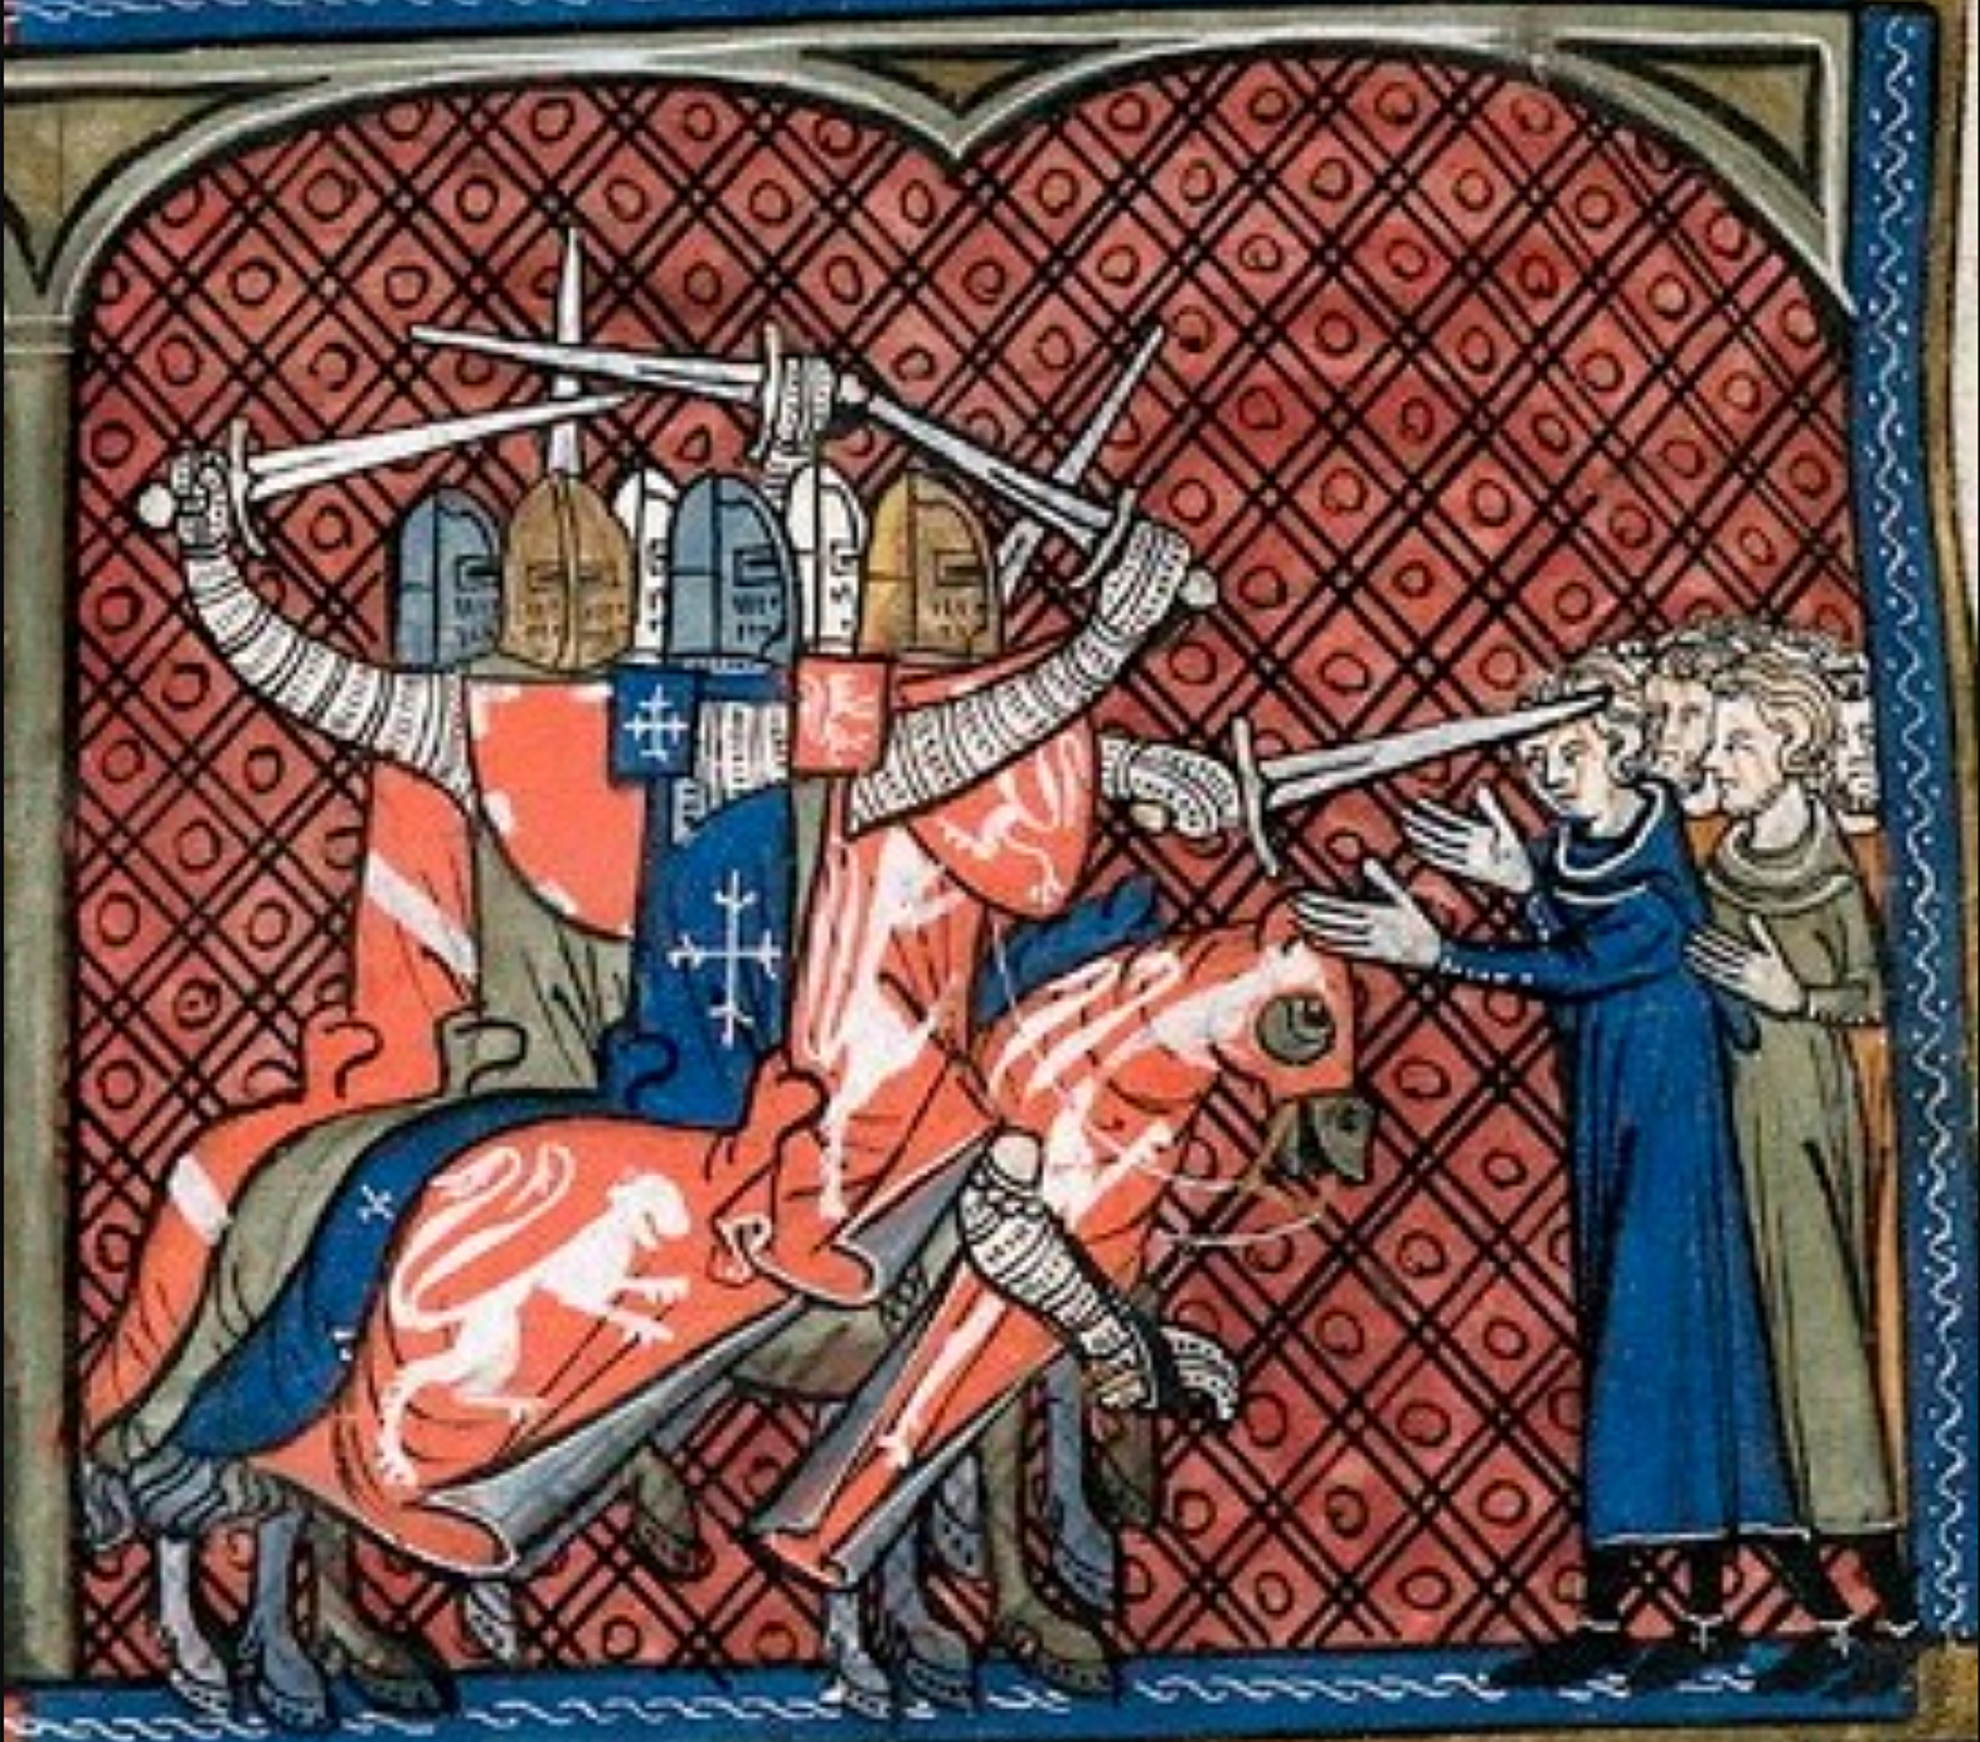 Miniatura que representa la masacre franco cruzada de Besiers. Fuente British Library